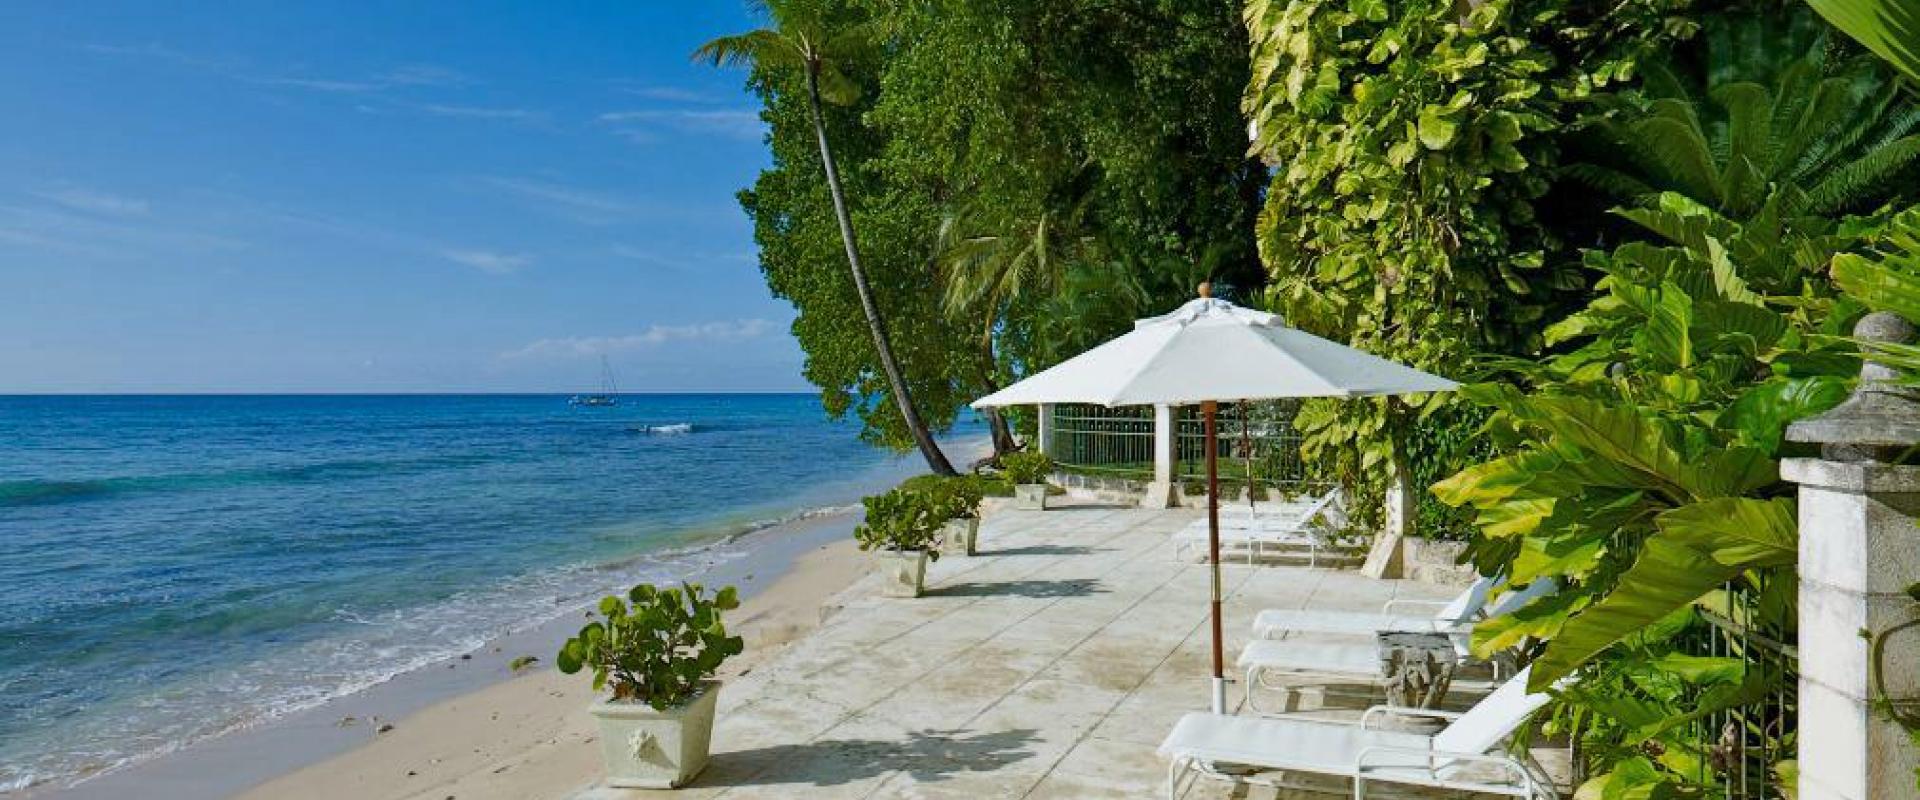 Barbados Holiday Rental Mango Bay Beach Shot